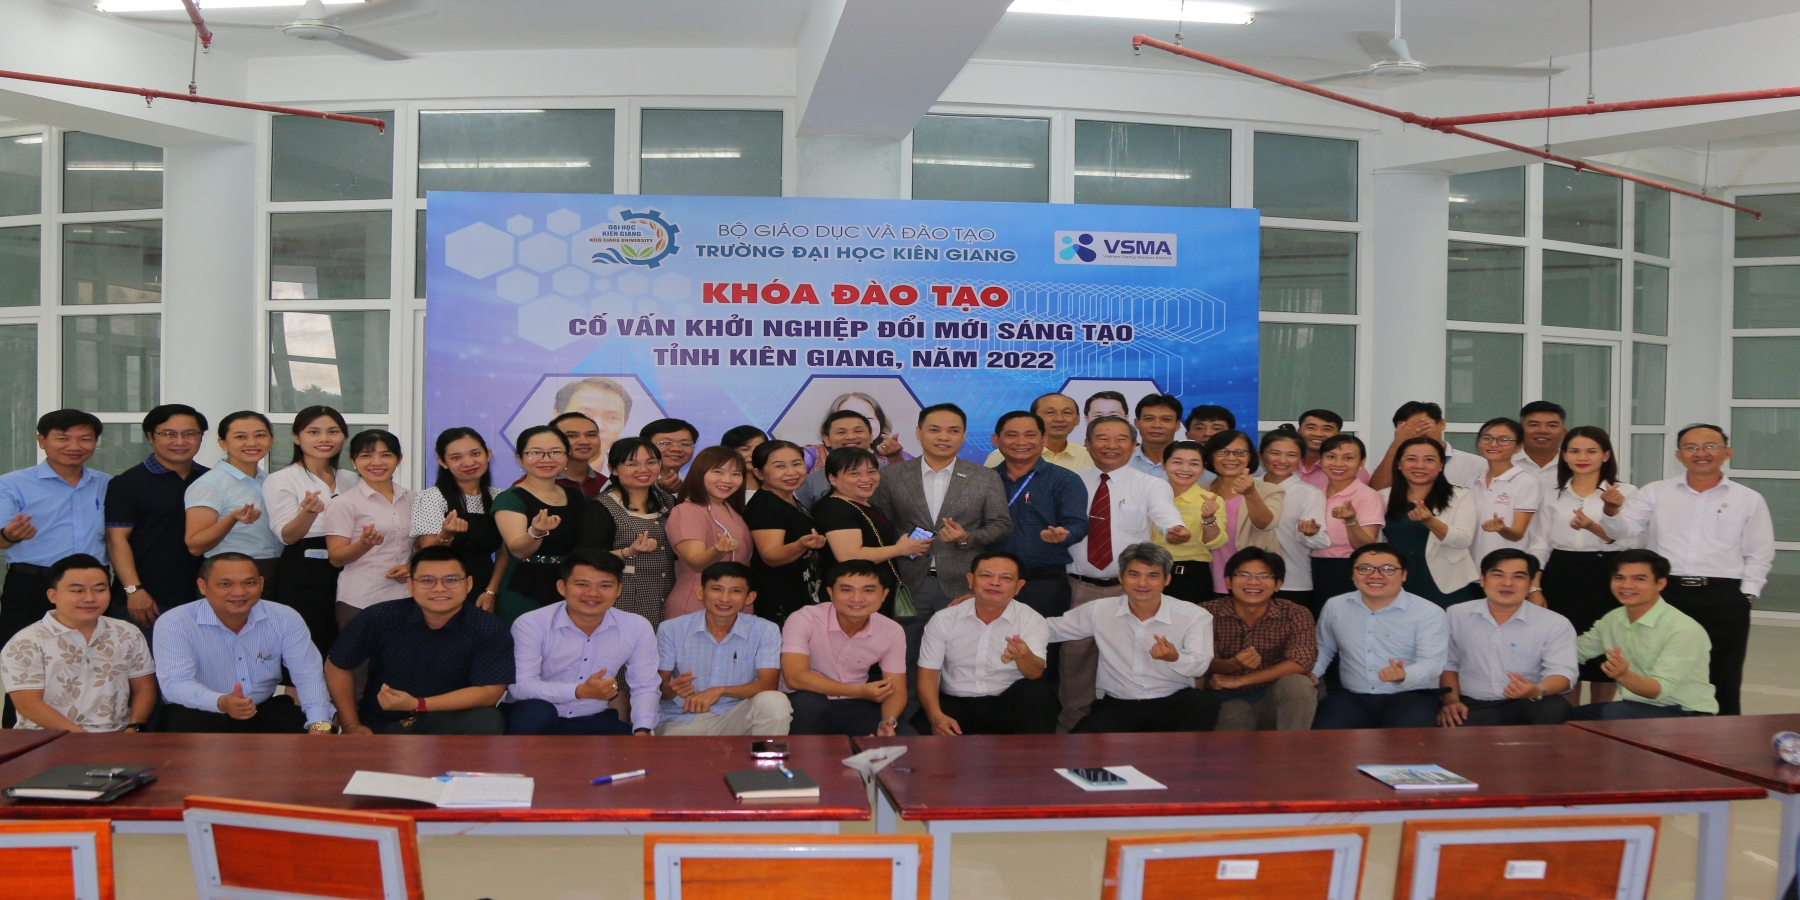 Tổ chức khoá đào tạo cố vấn khởi nghiệp đổi mới sáng tạo tỉnh Kiên Giang